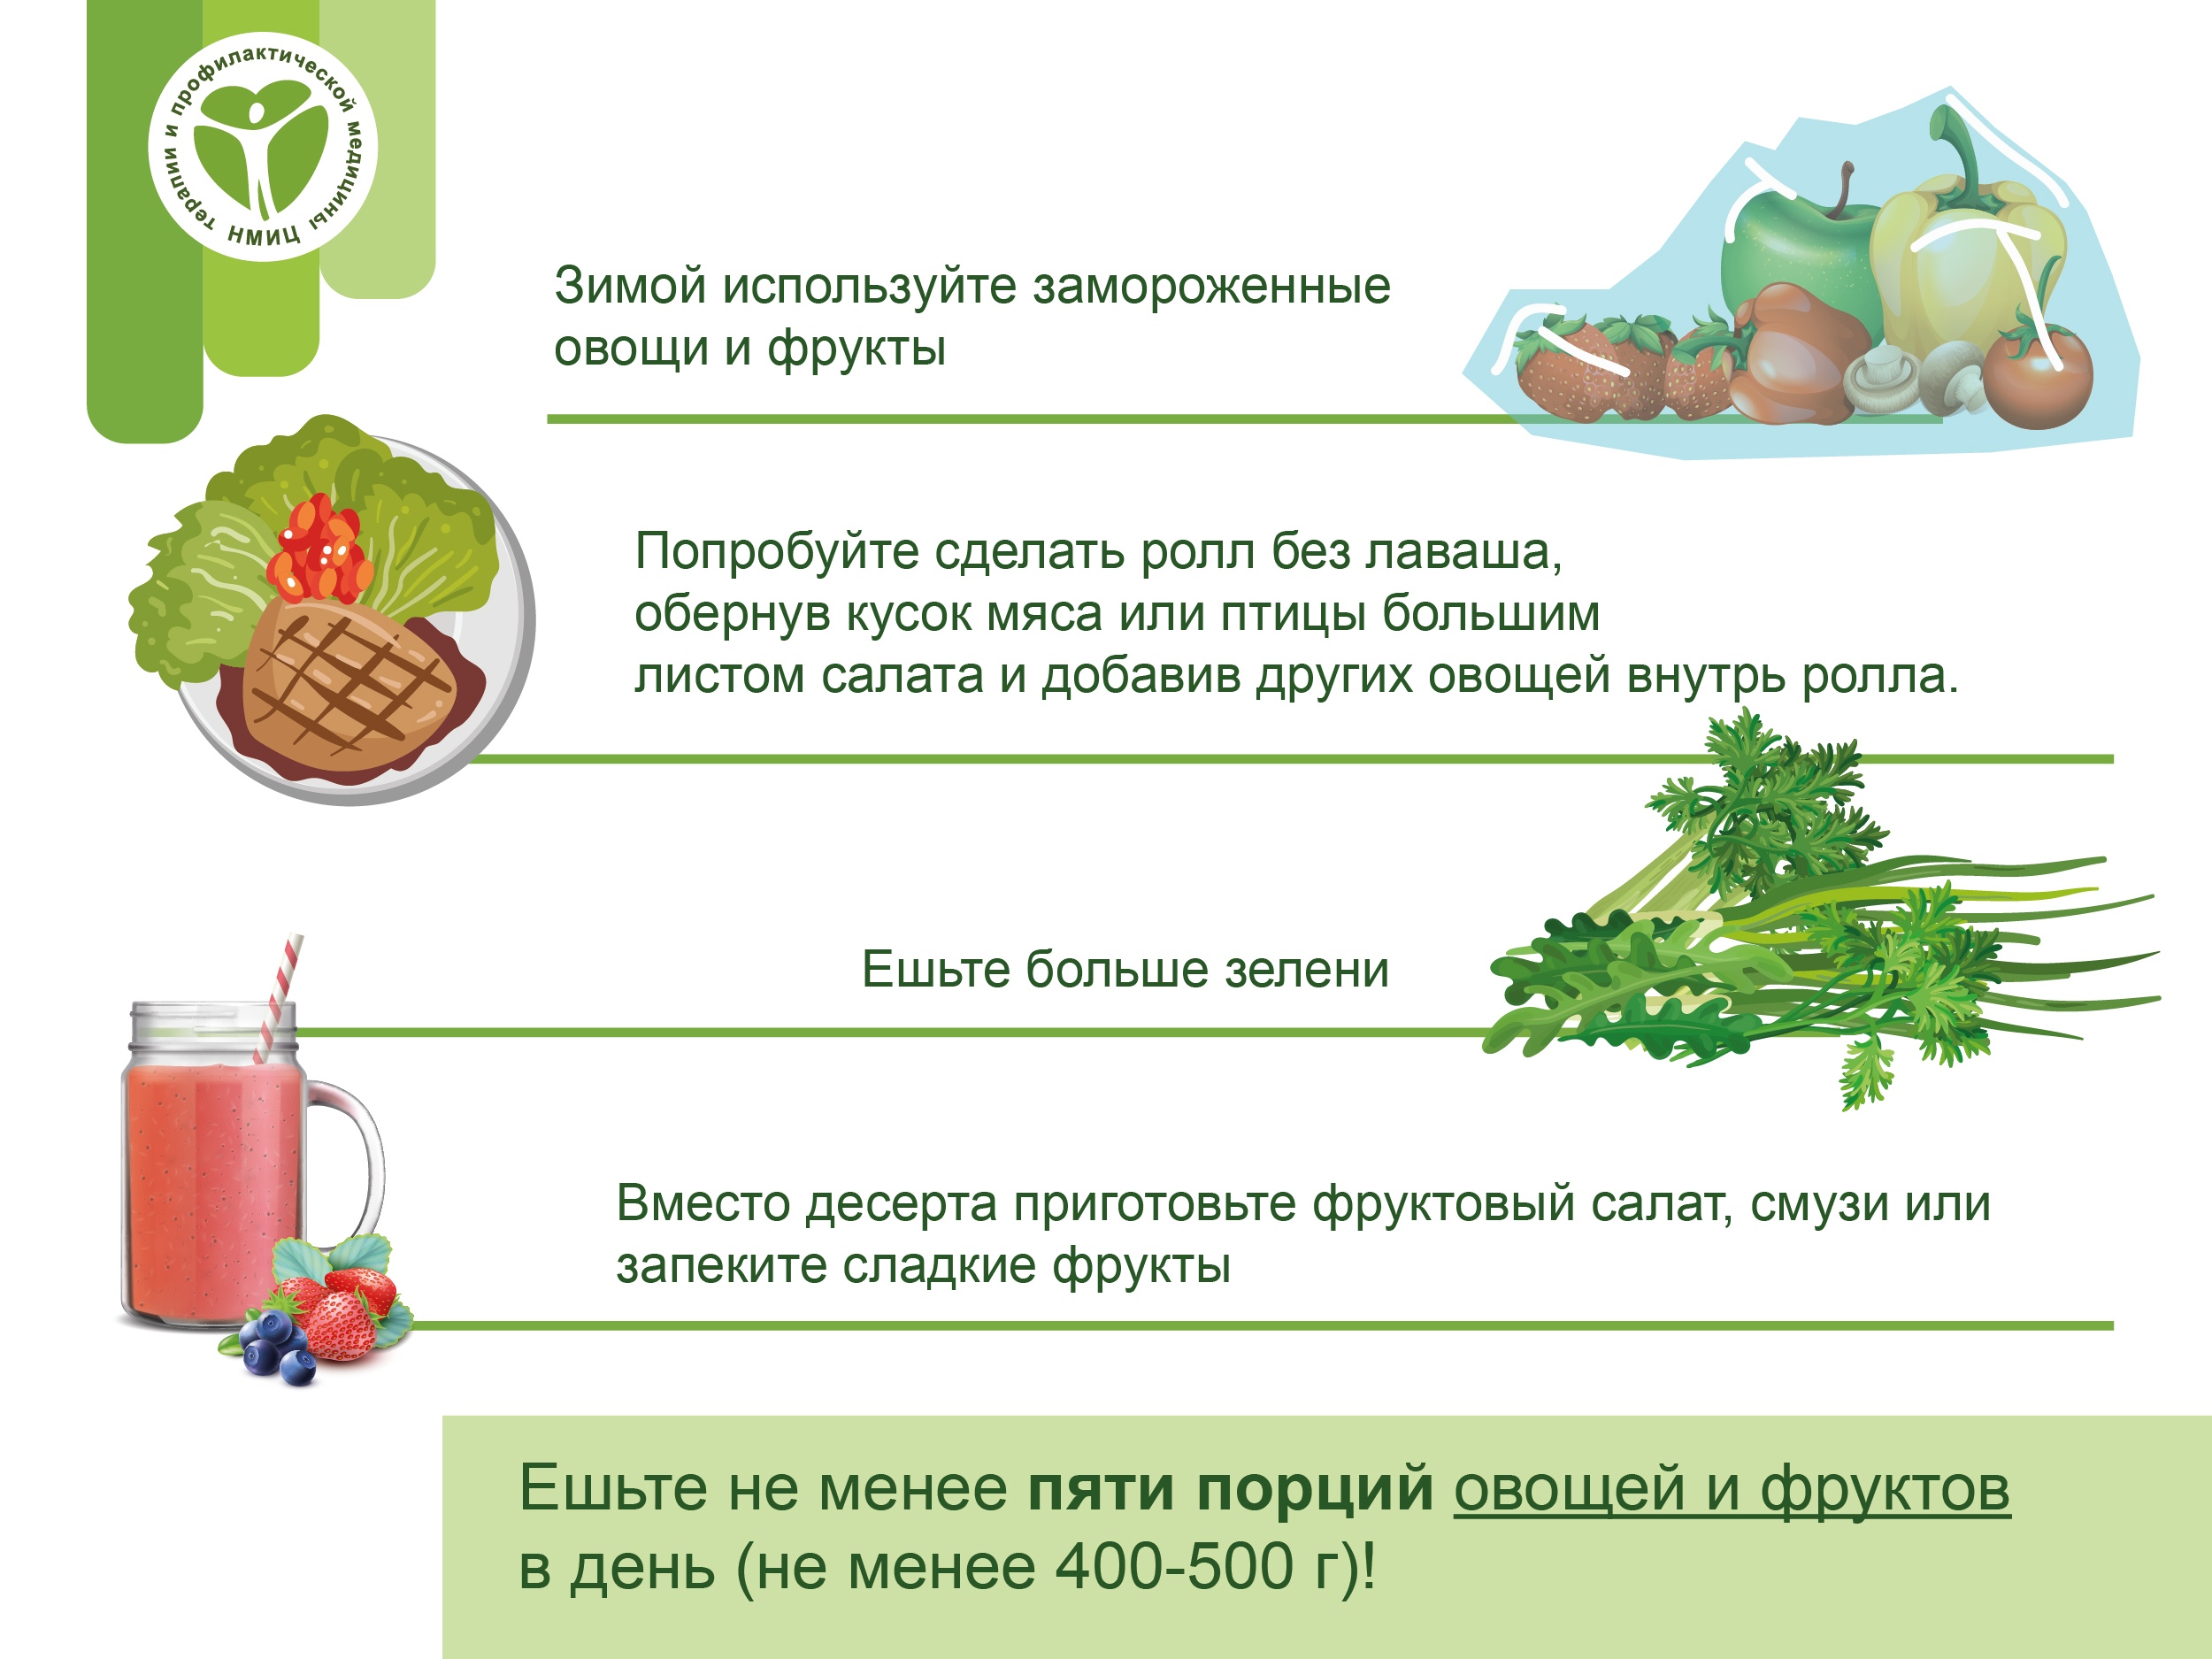 Как увеличить потребление овощей2.jpg